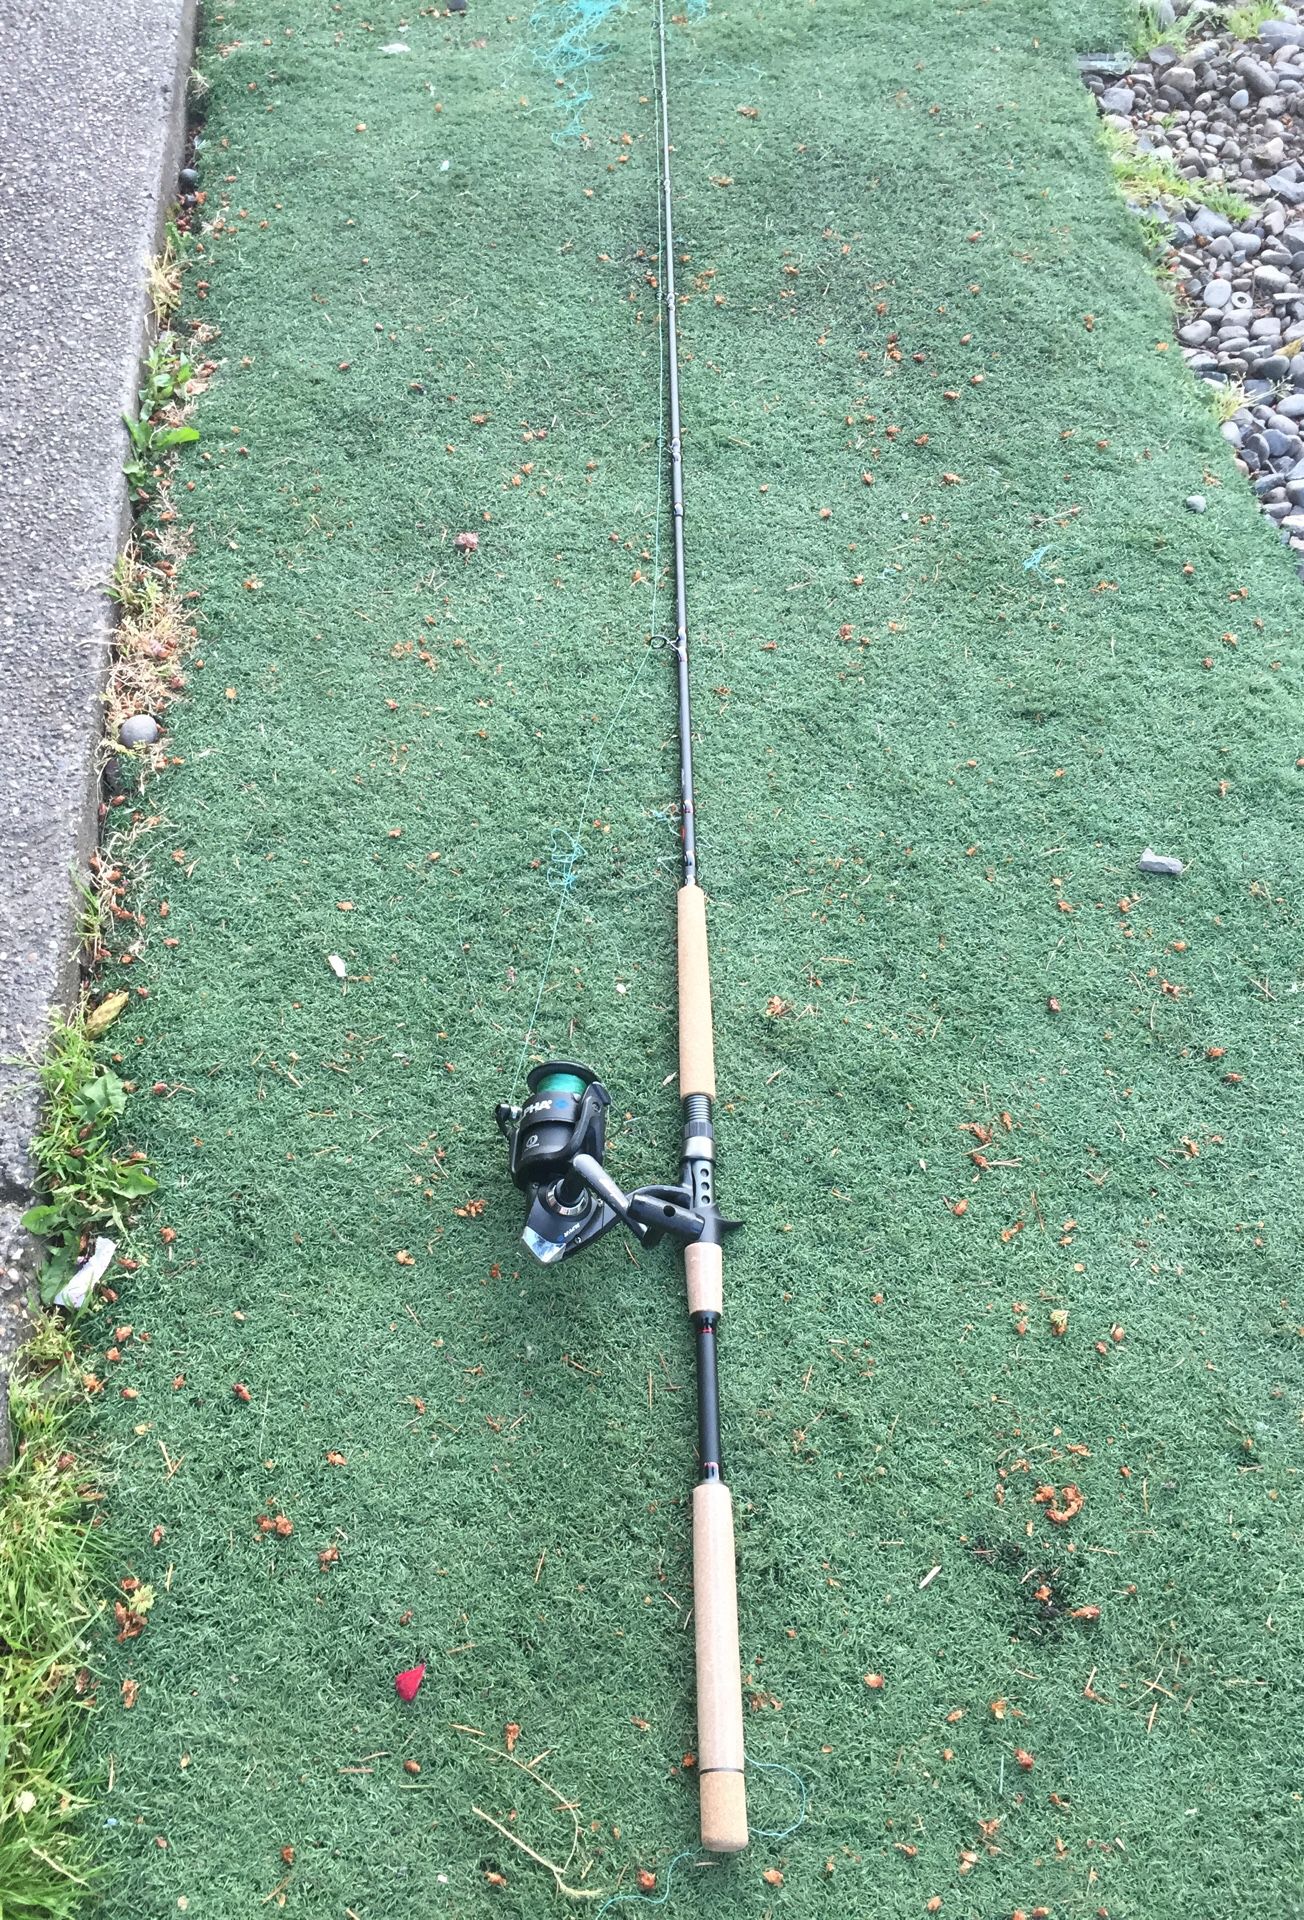 Berkeley fishing pole need gone ASAP